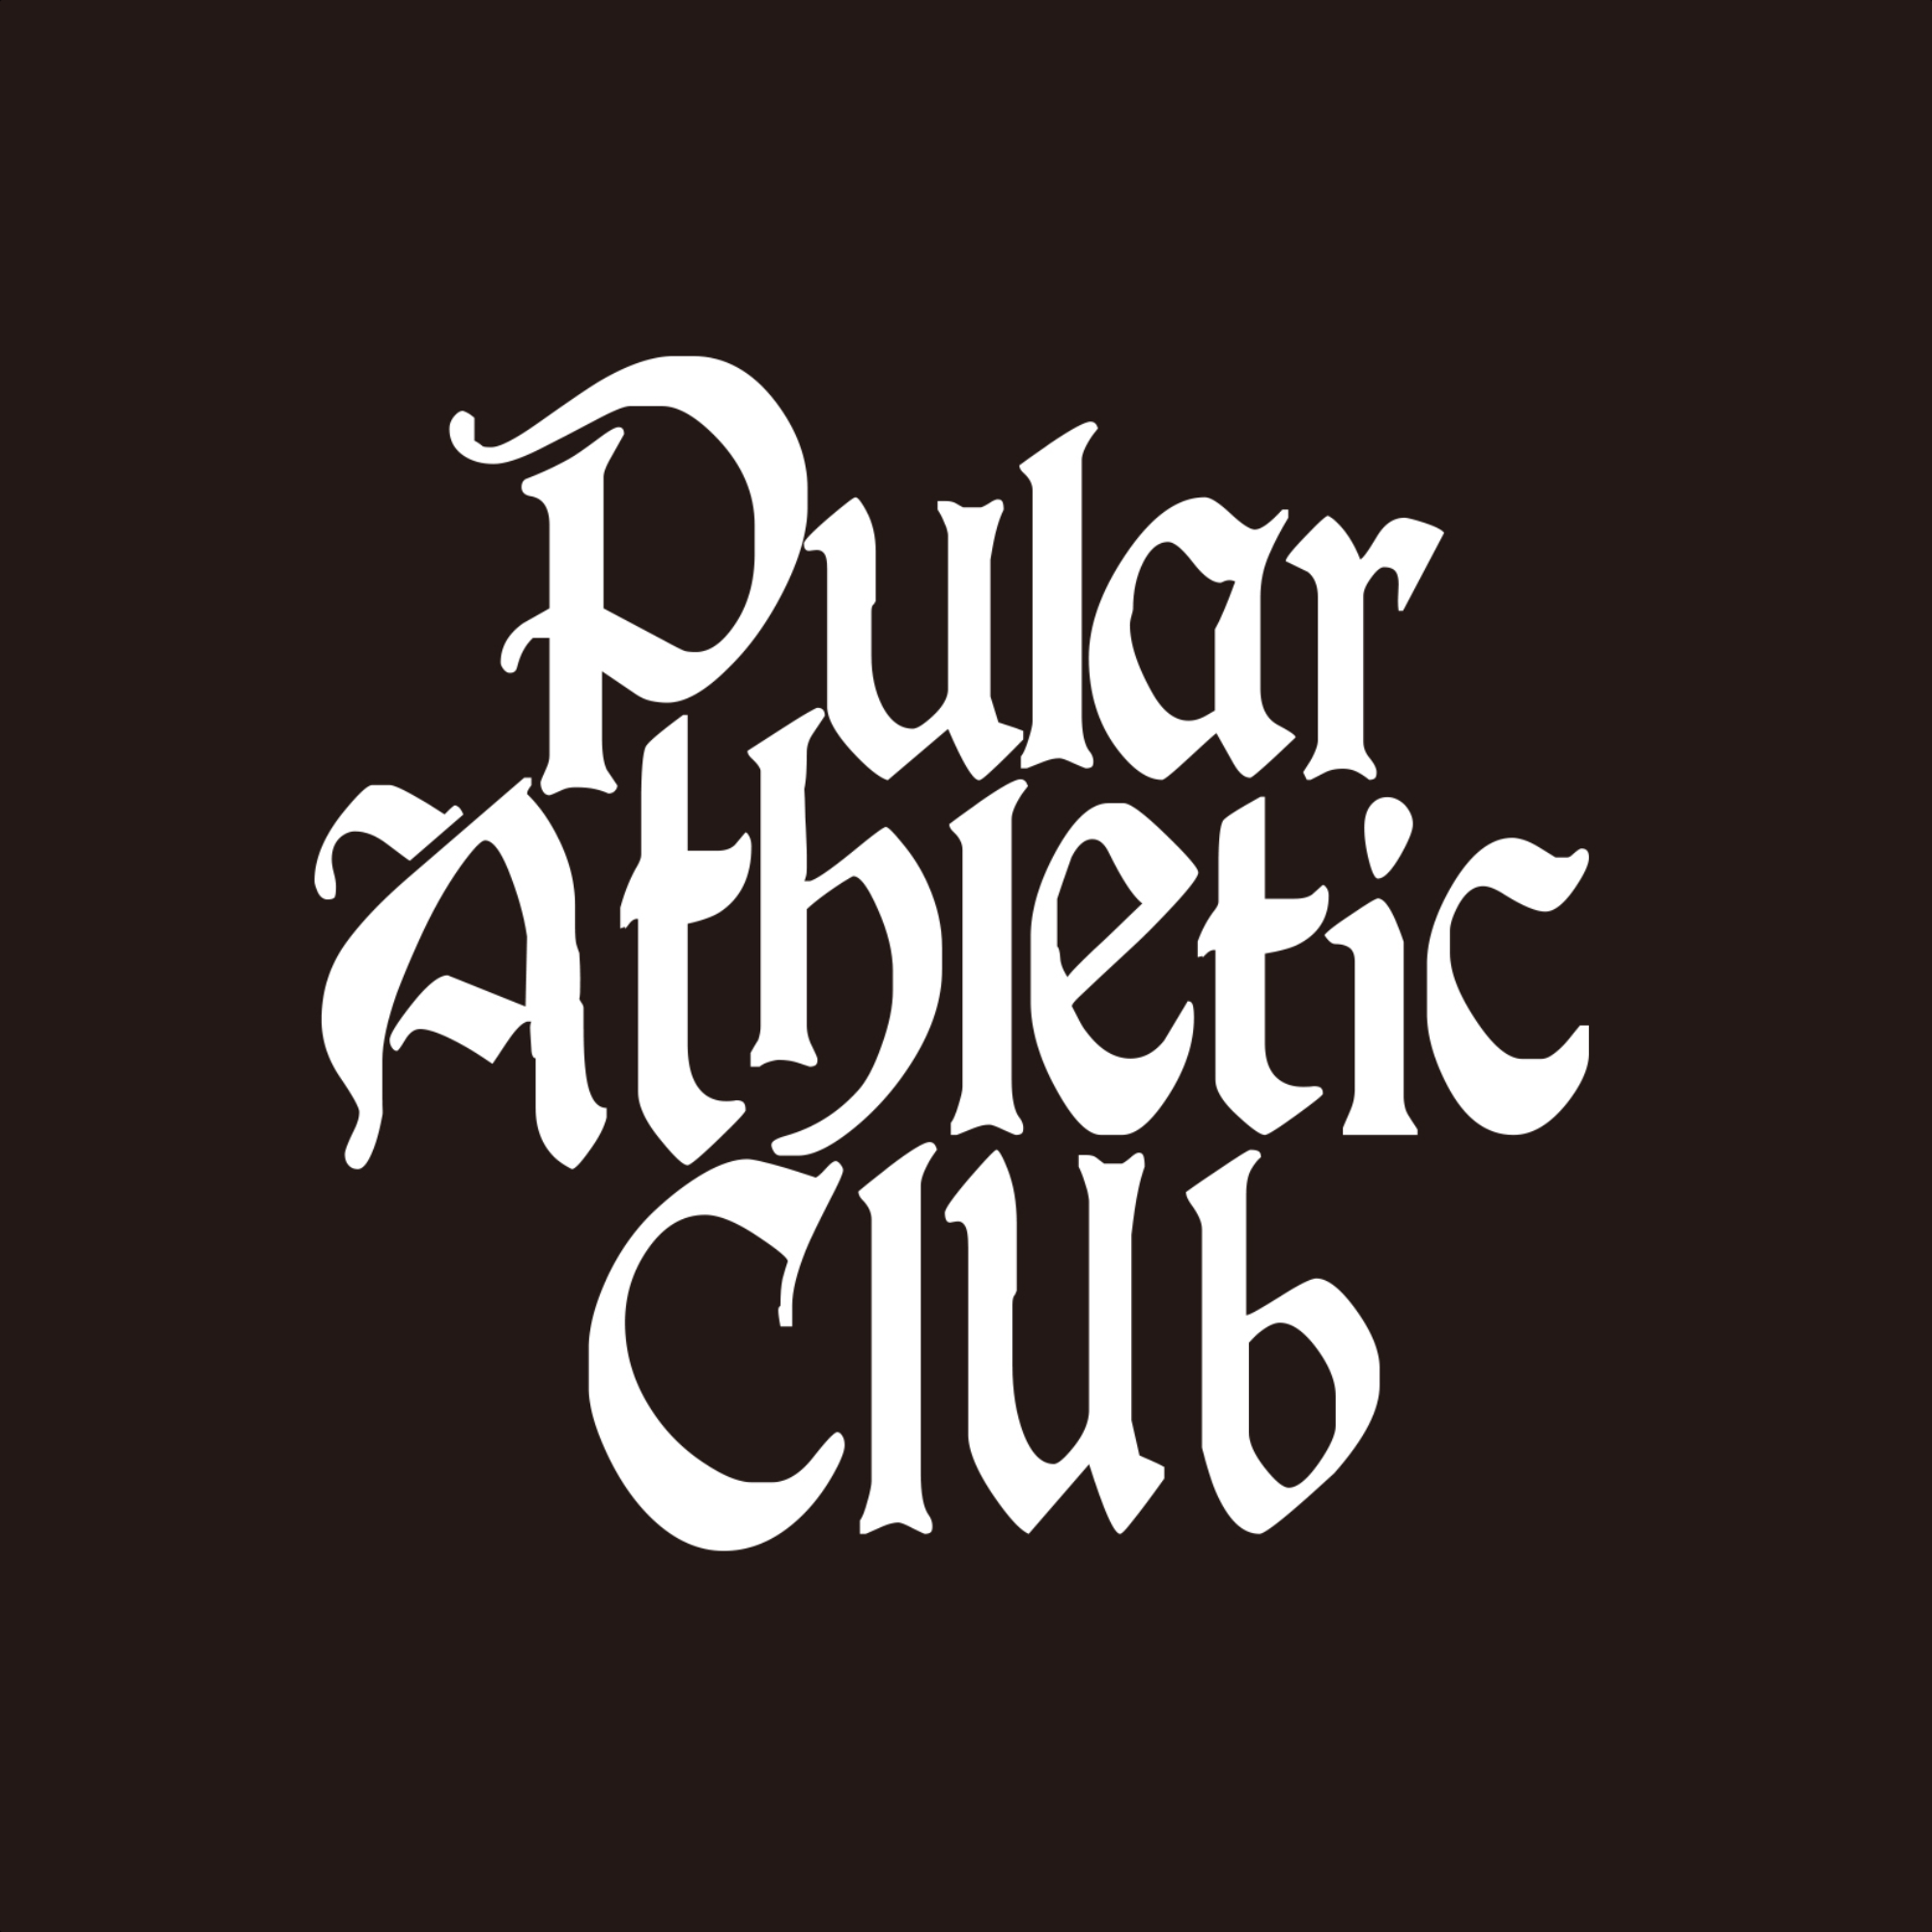 Pular Athletic Club Seoul